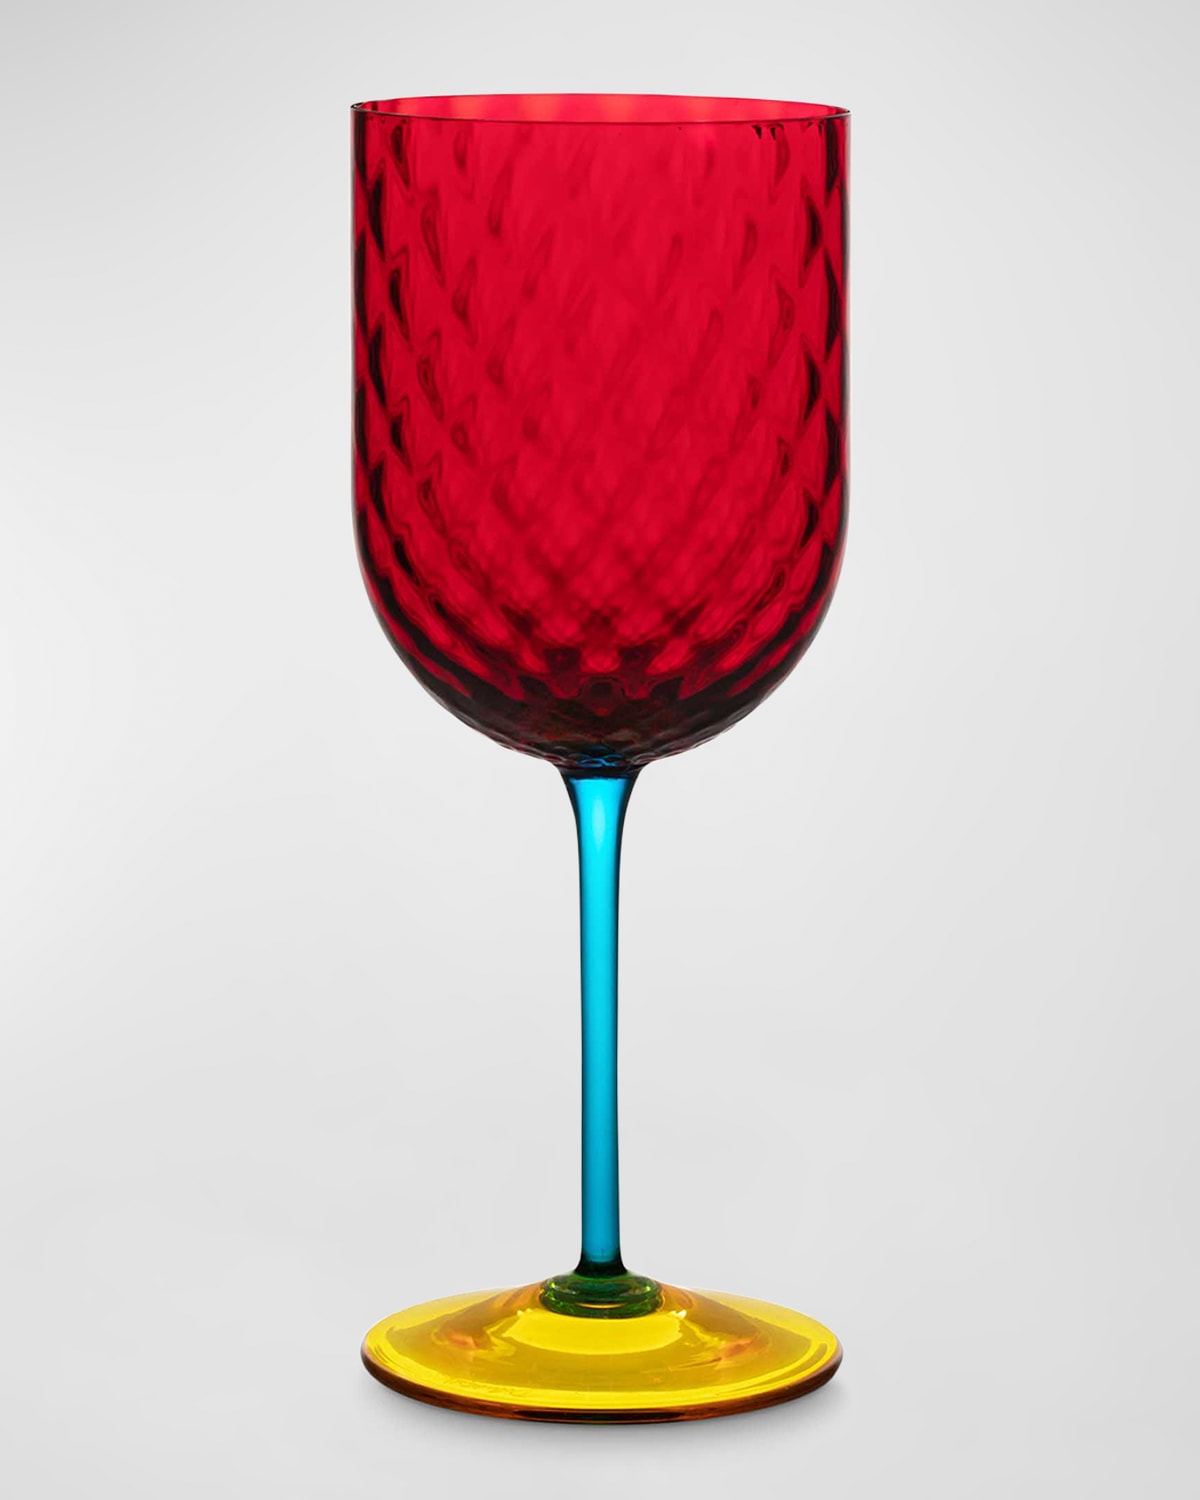 Carretto Murano Wine Glass